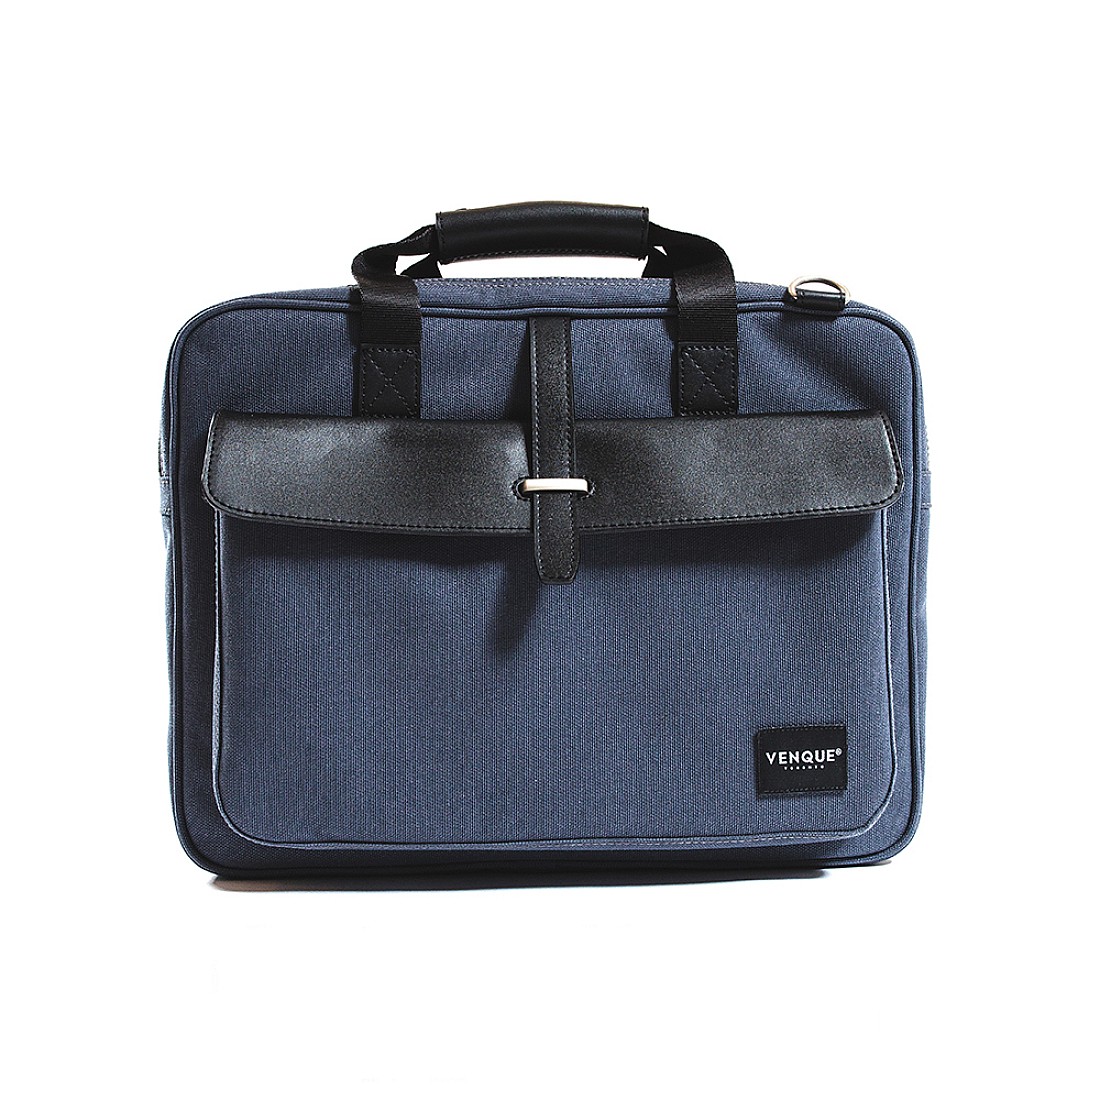 Venque AIX Pro Blue Briefcase